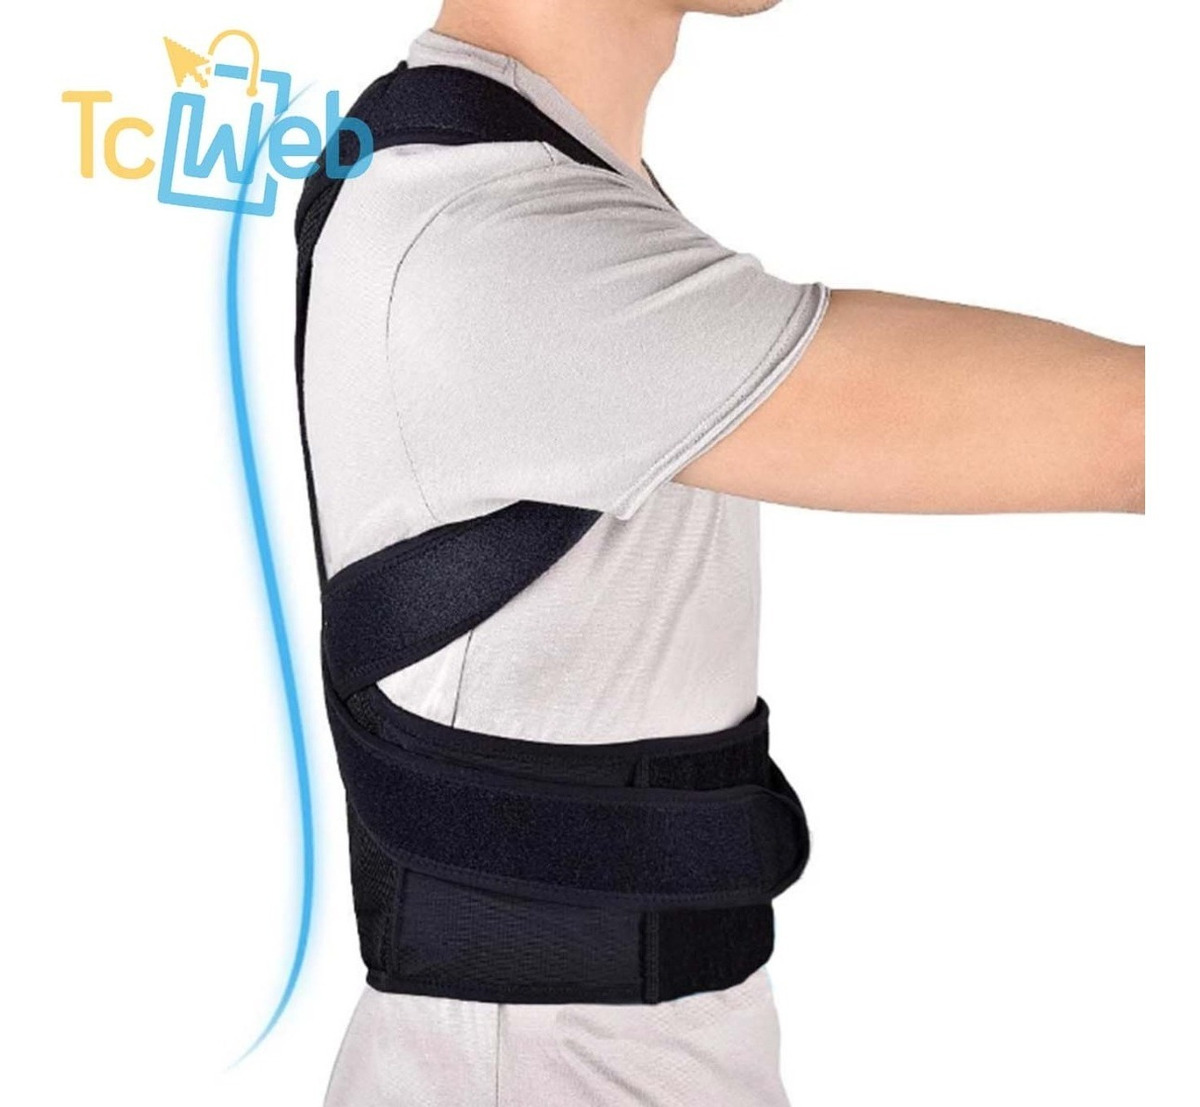 Faja Ortopedica Corrector De Postura Y Espalda Tcweb 83500 En Mercado Libre 3082